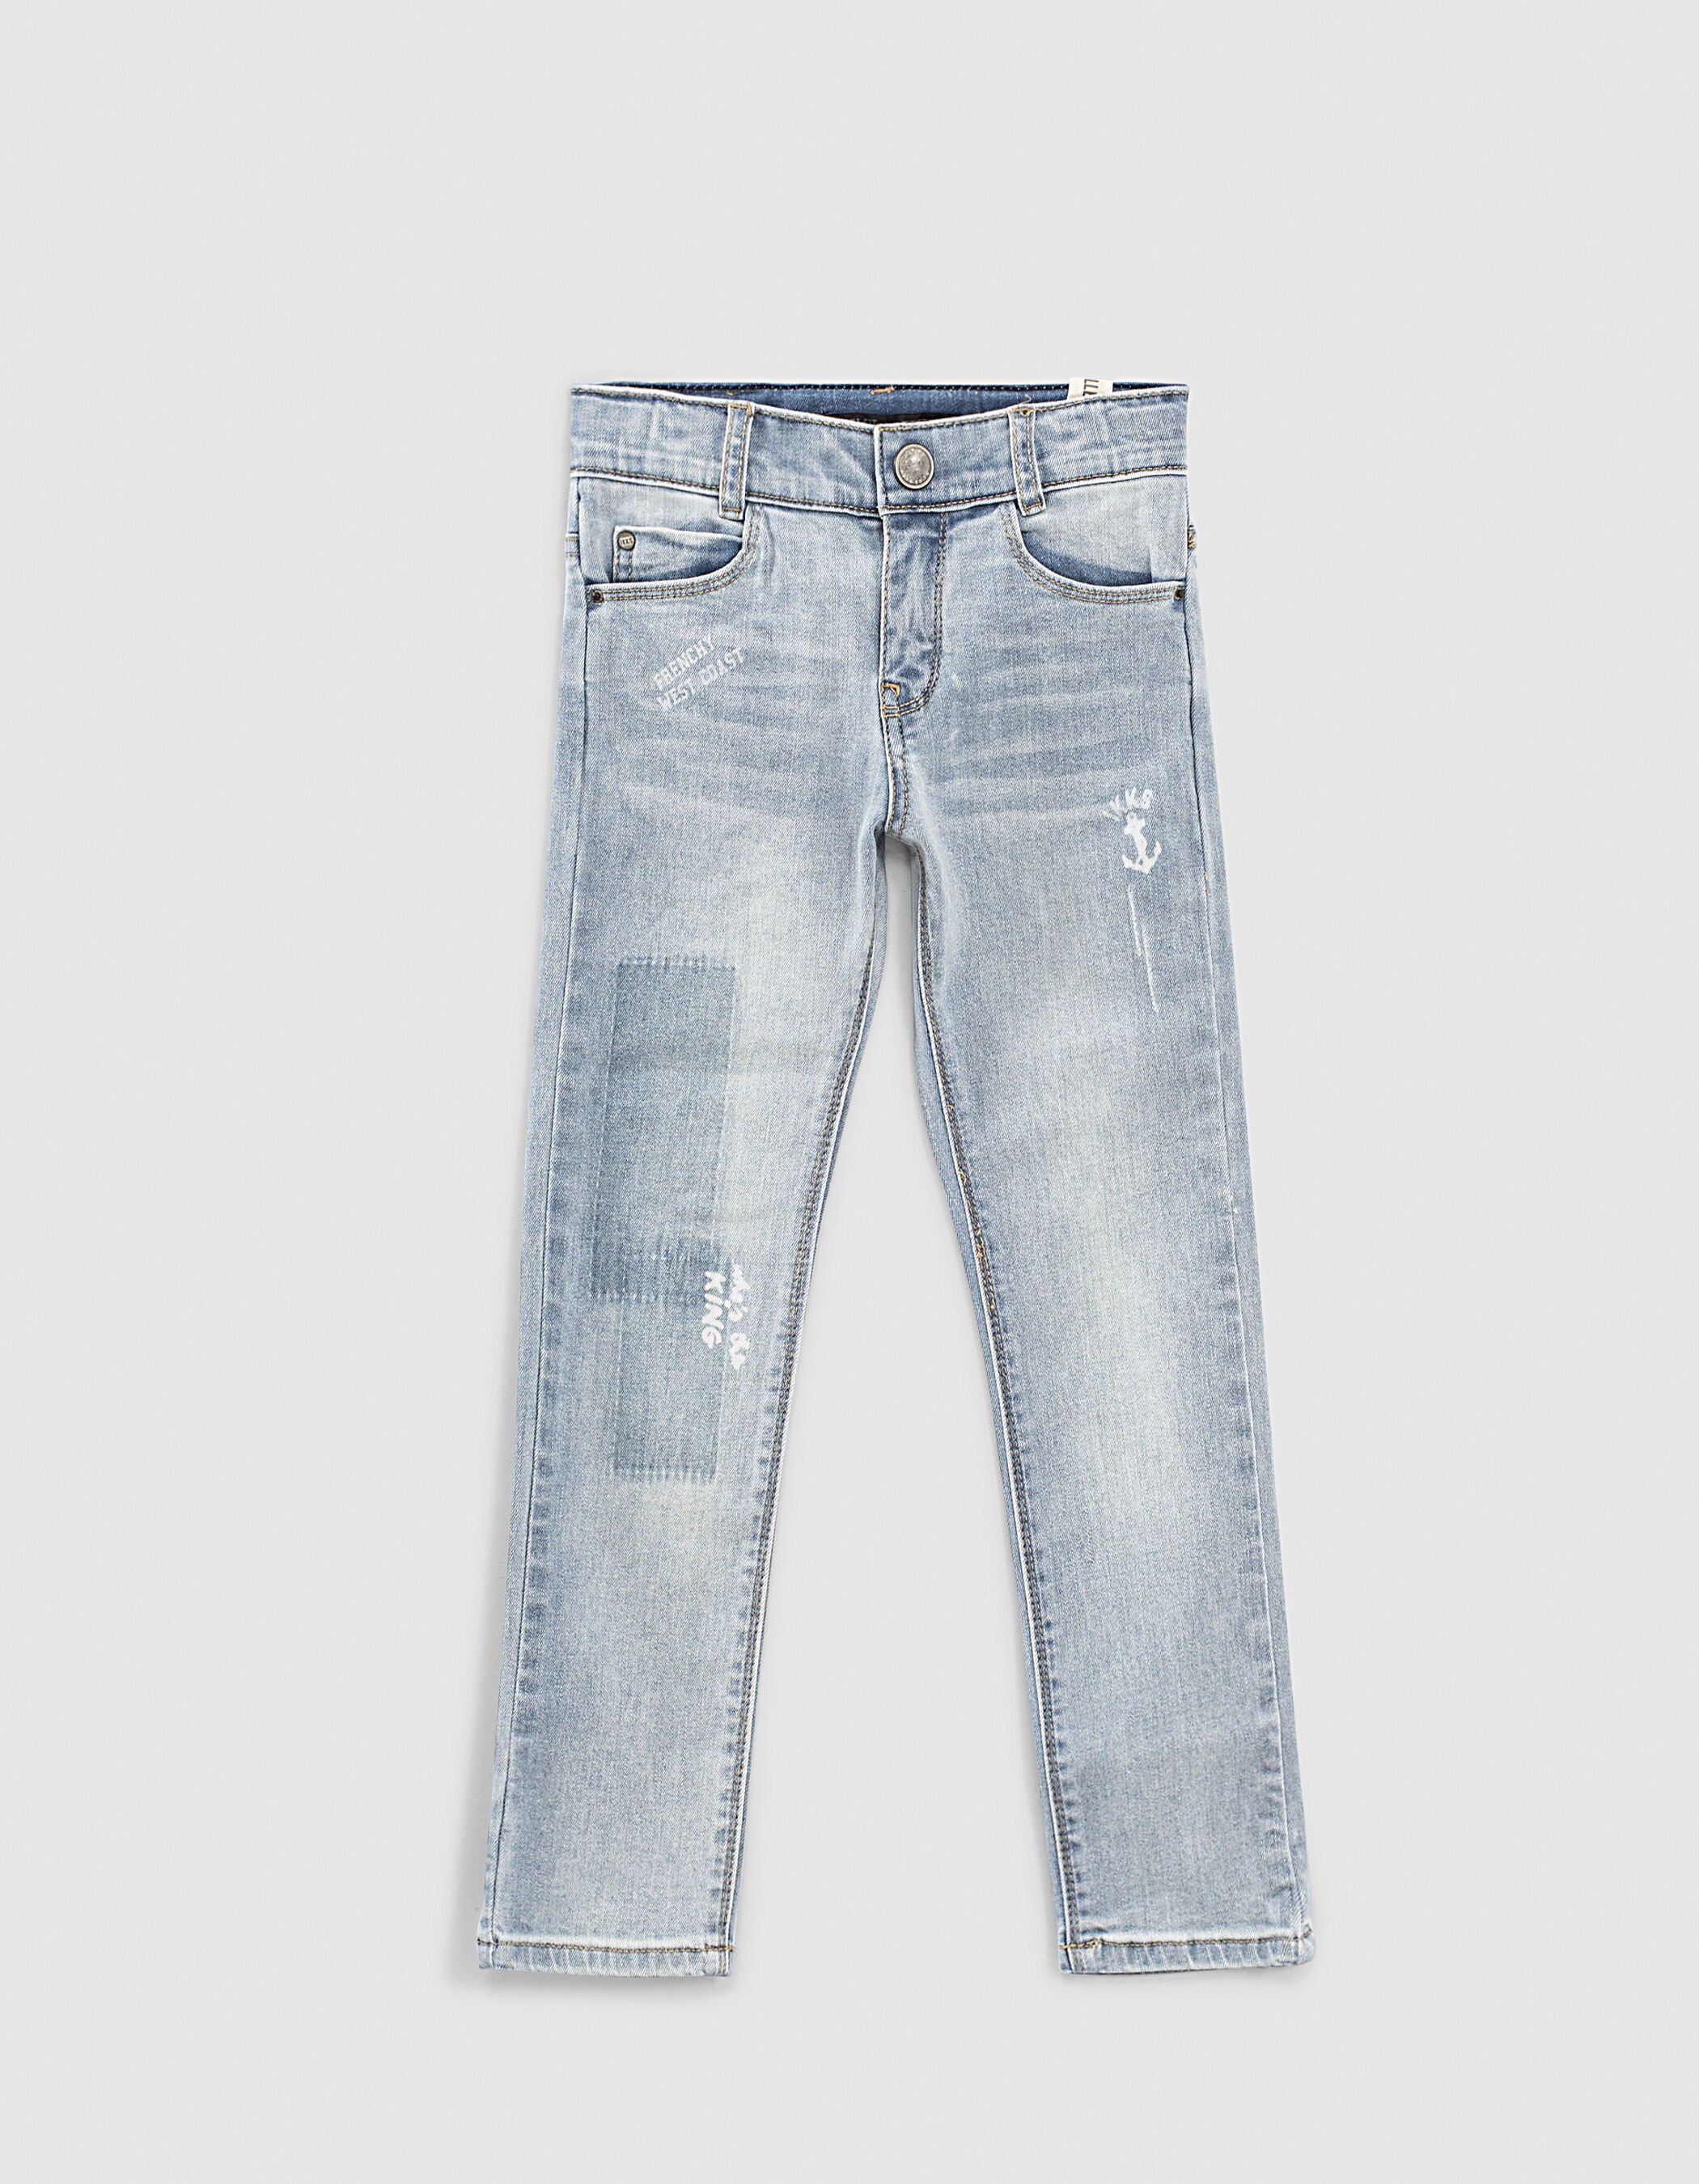 IKKS Denim Slim Corail Jeans para Niñas